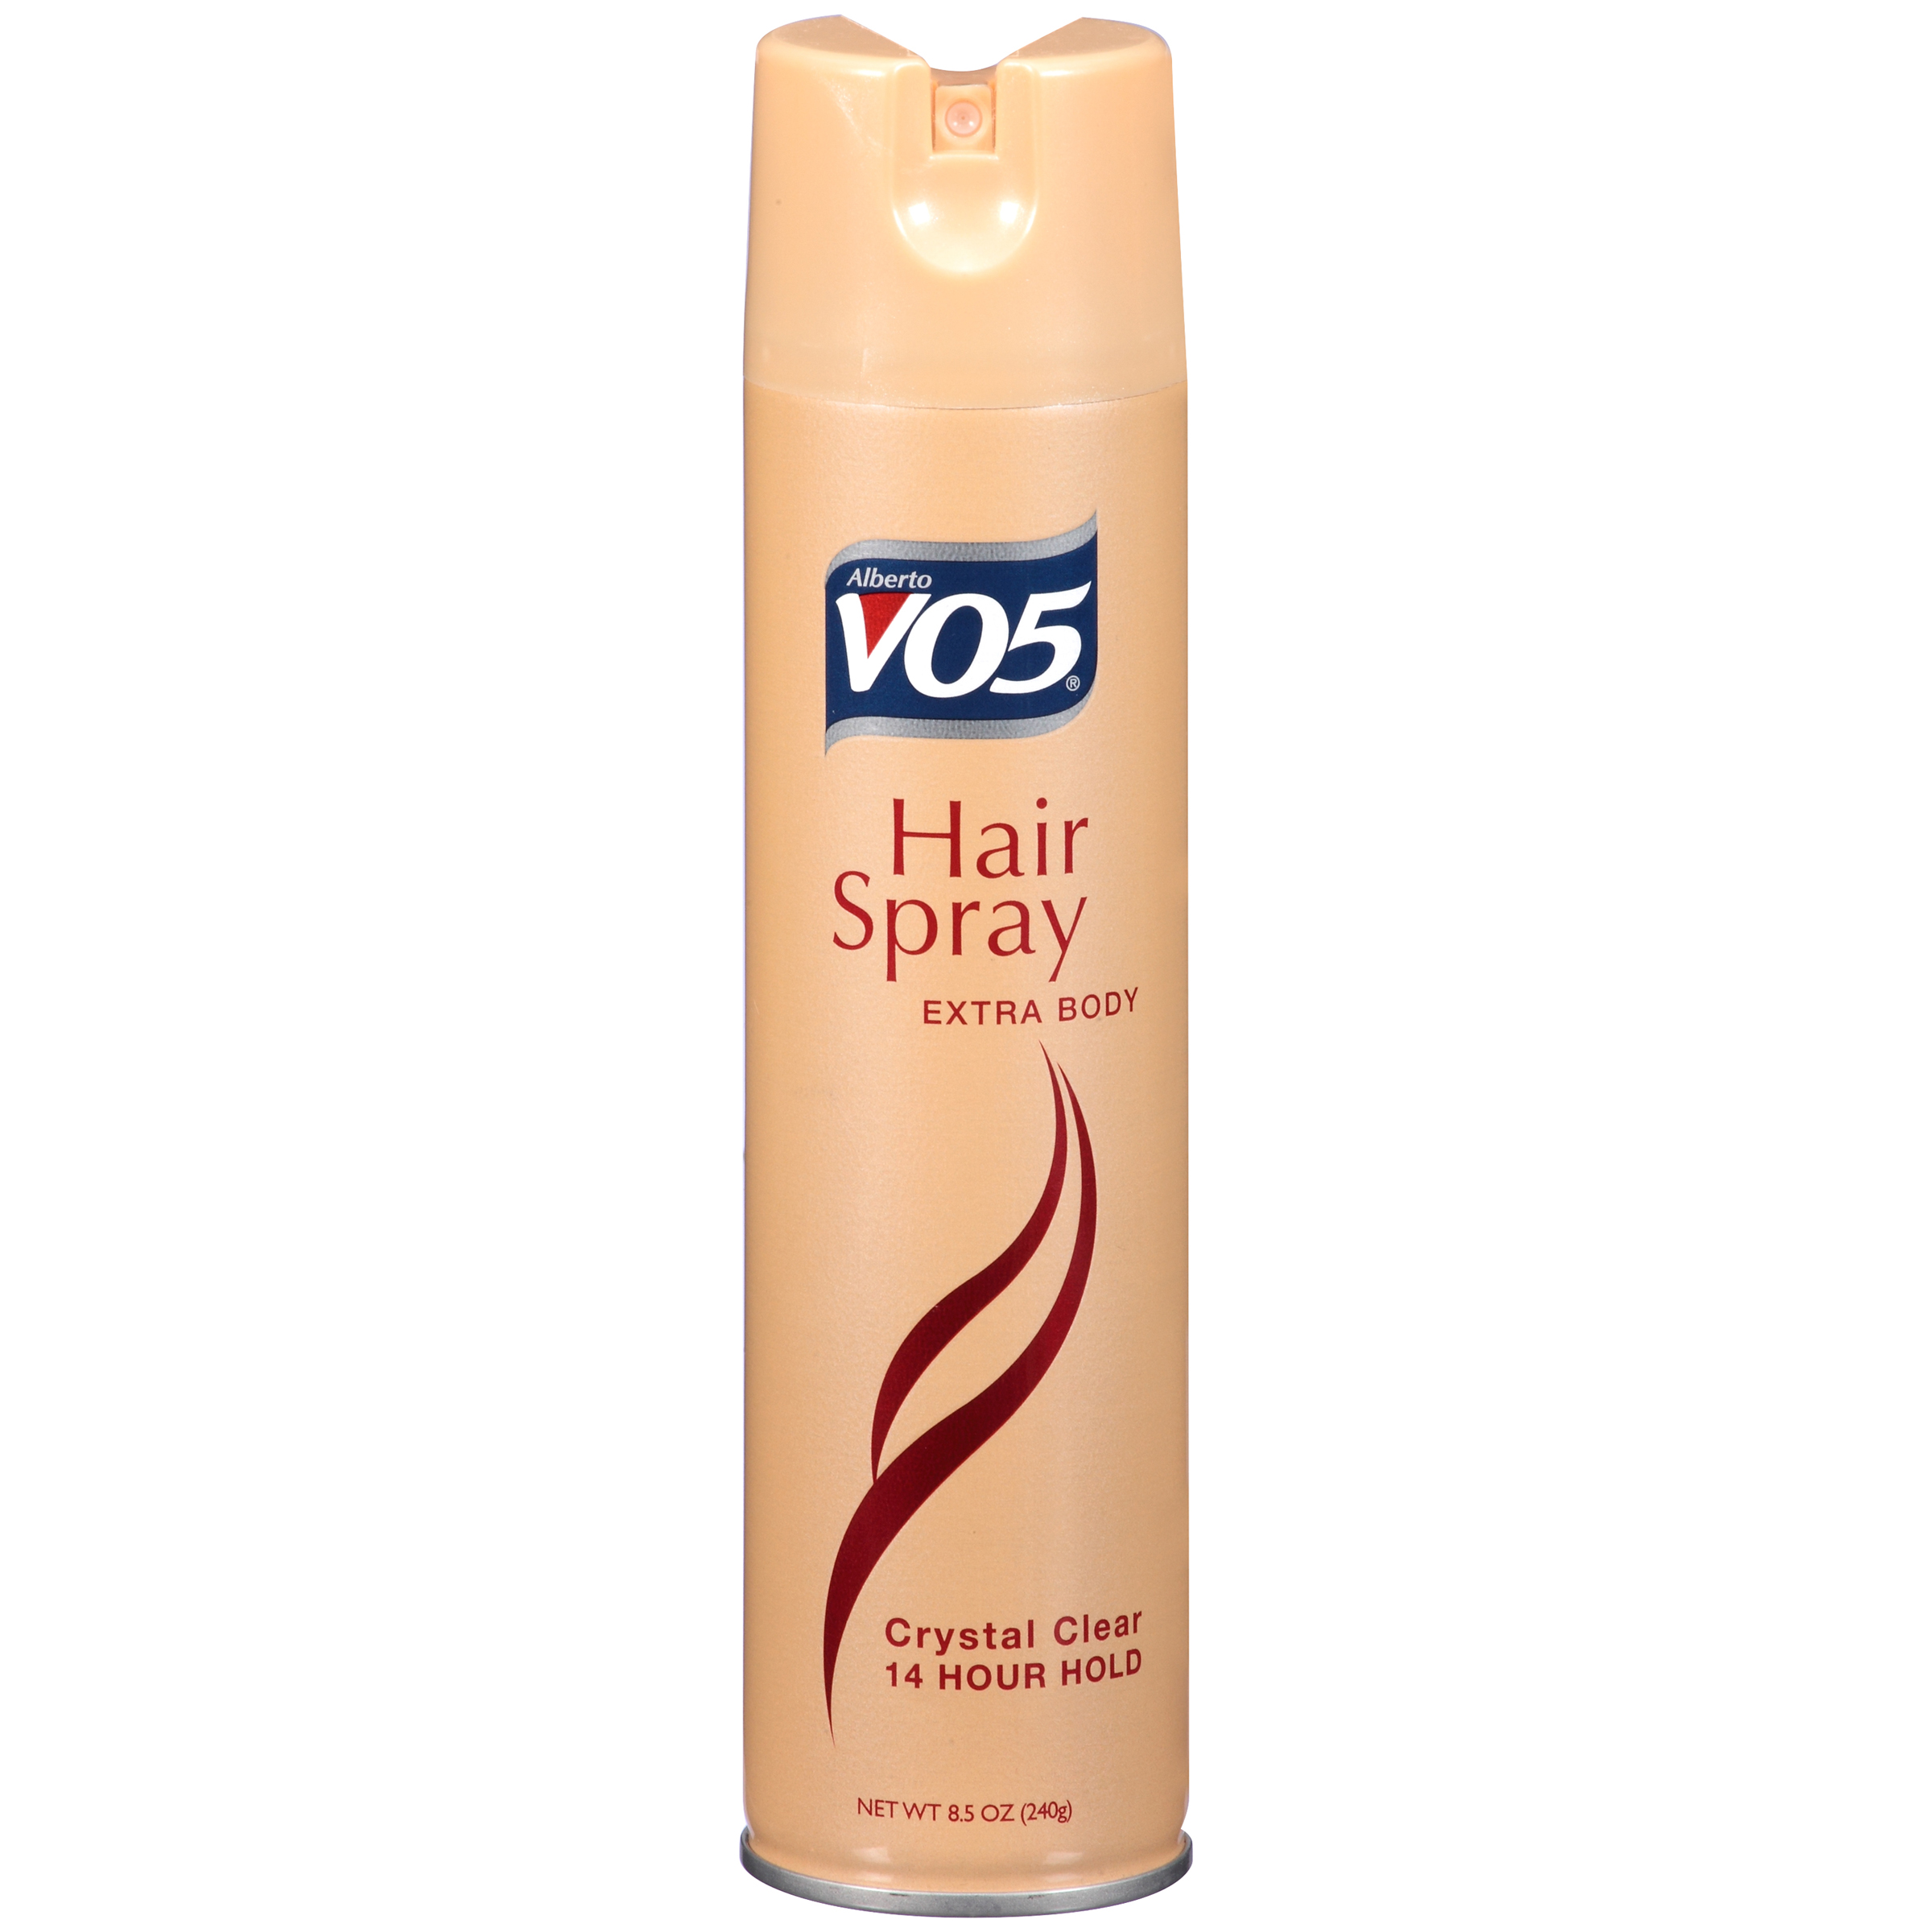 VO5 Hair Spray, Extra Body, 8.5 oz (240 g)